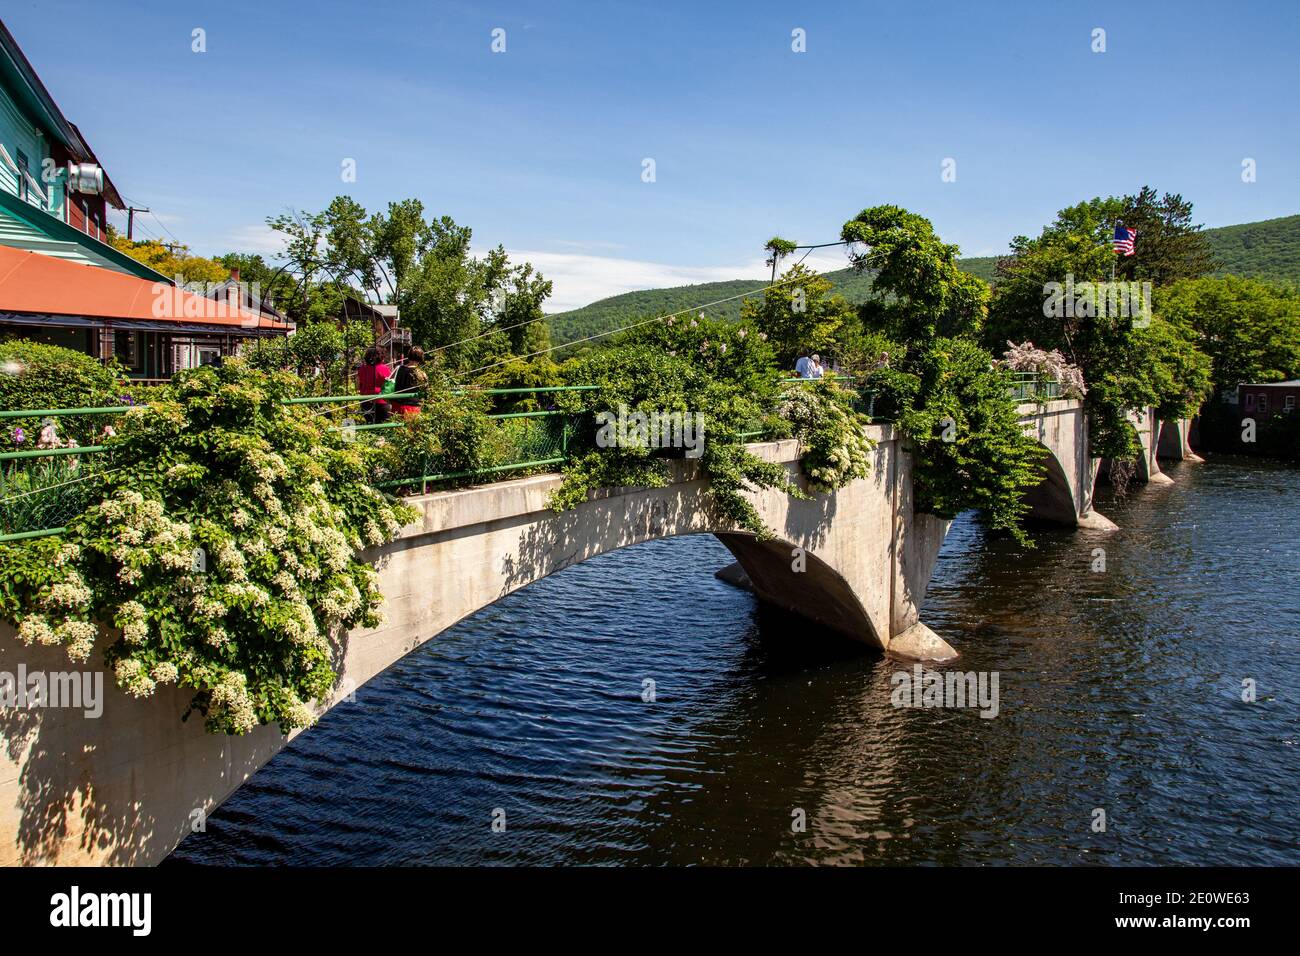 The Bridge of Flowers in Shelburne Falls, Massachusetts Stock Photo